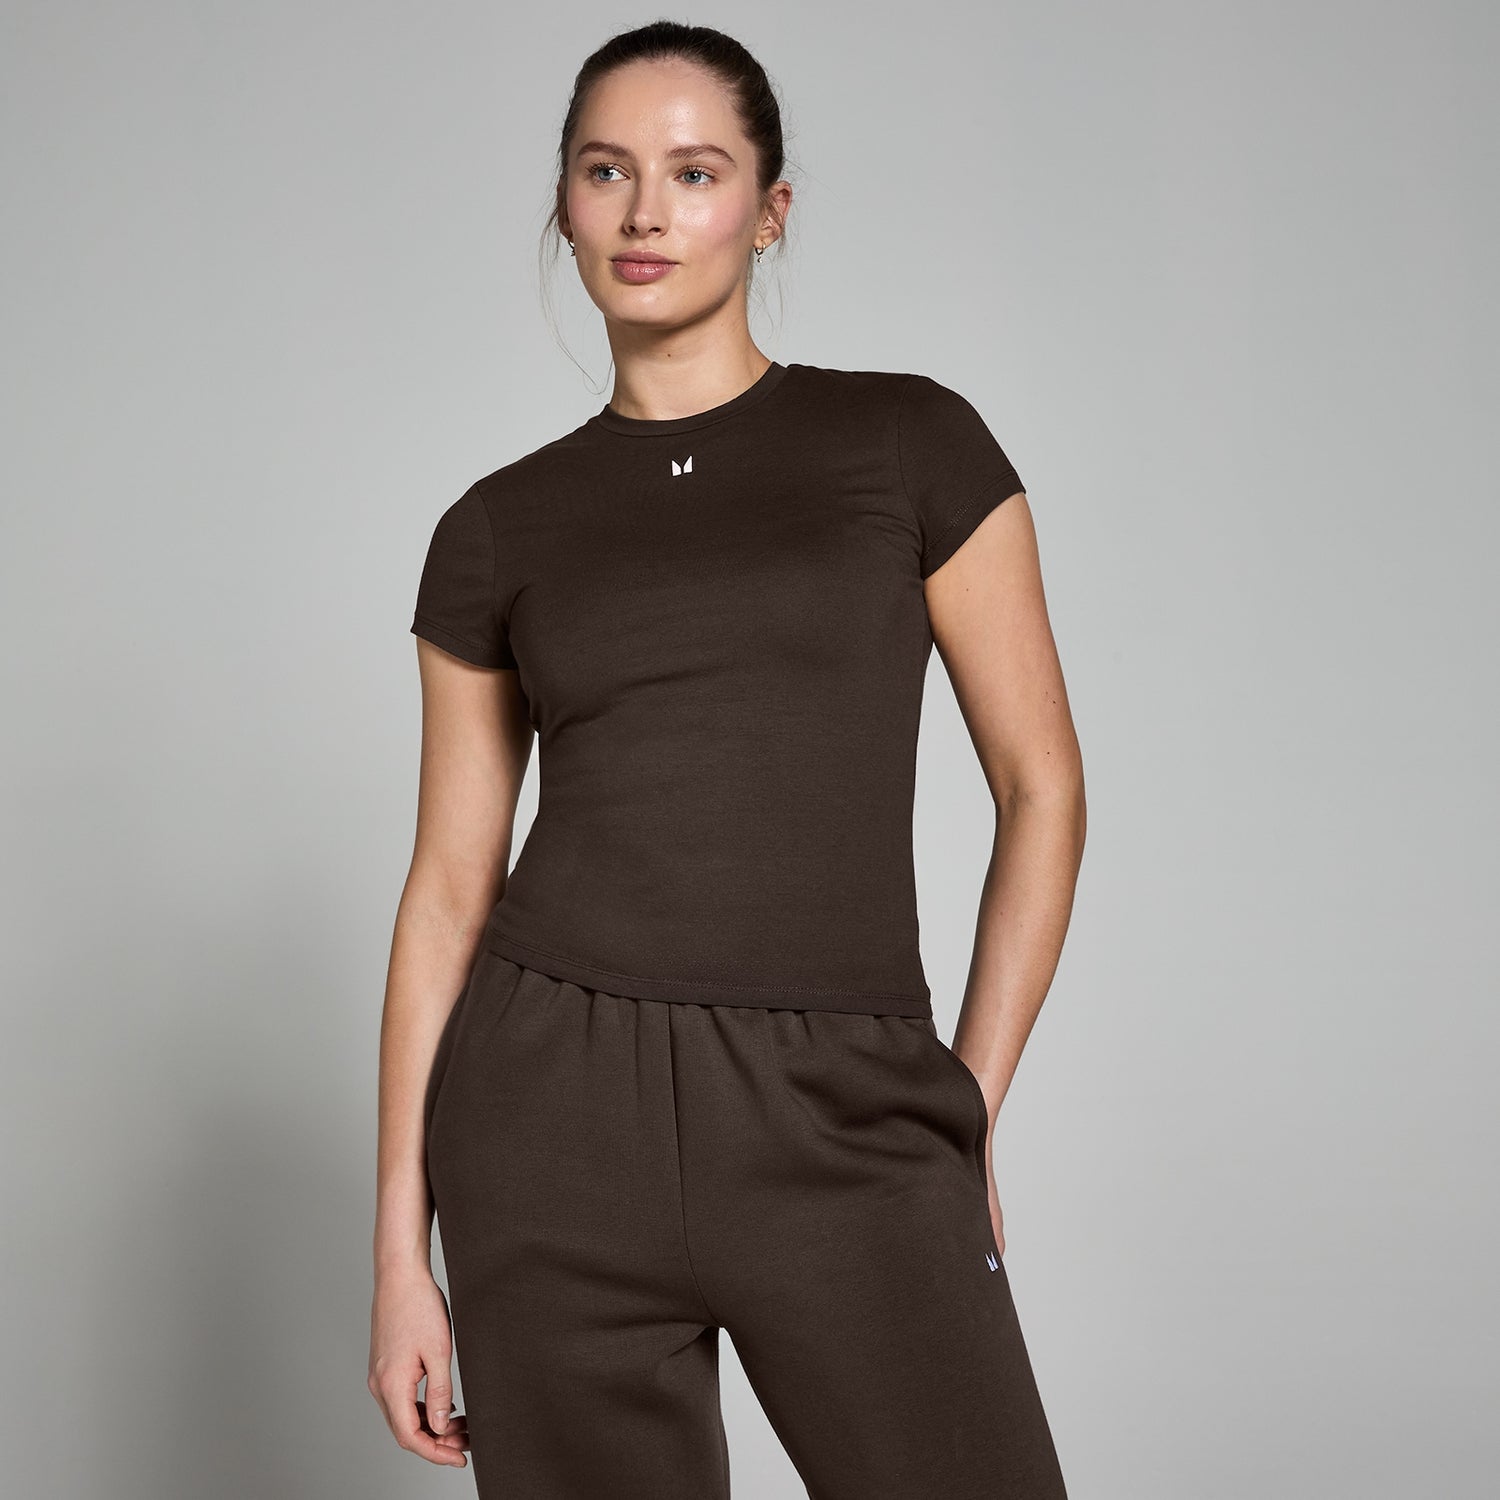 Женская облегающая футболка с короткими рукавами MP Basic — кофейный цвет - XS